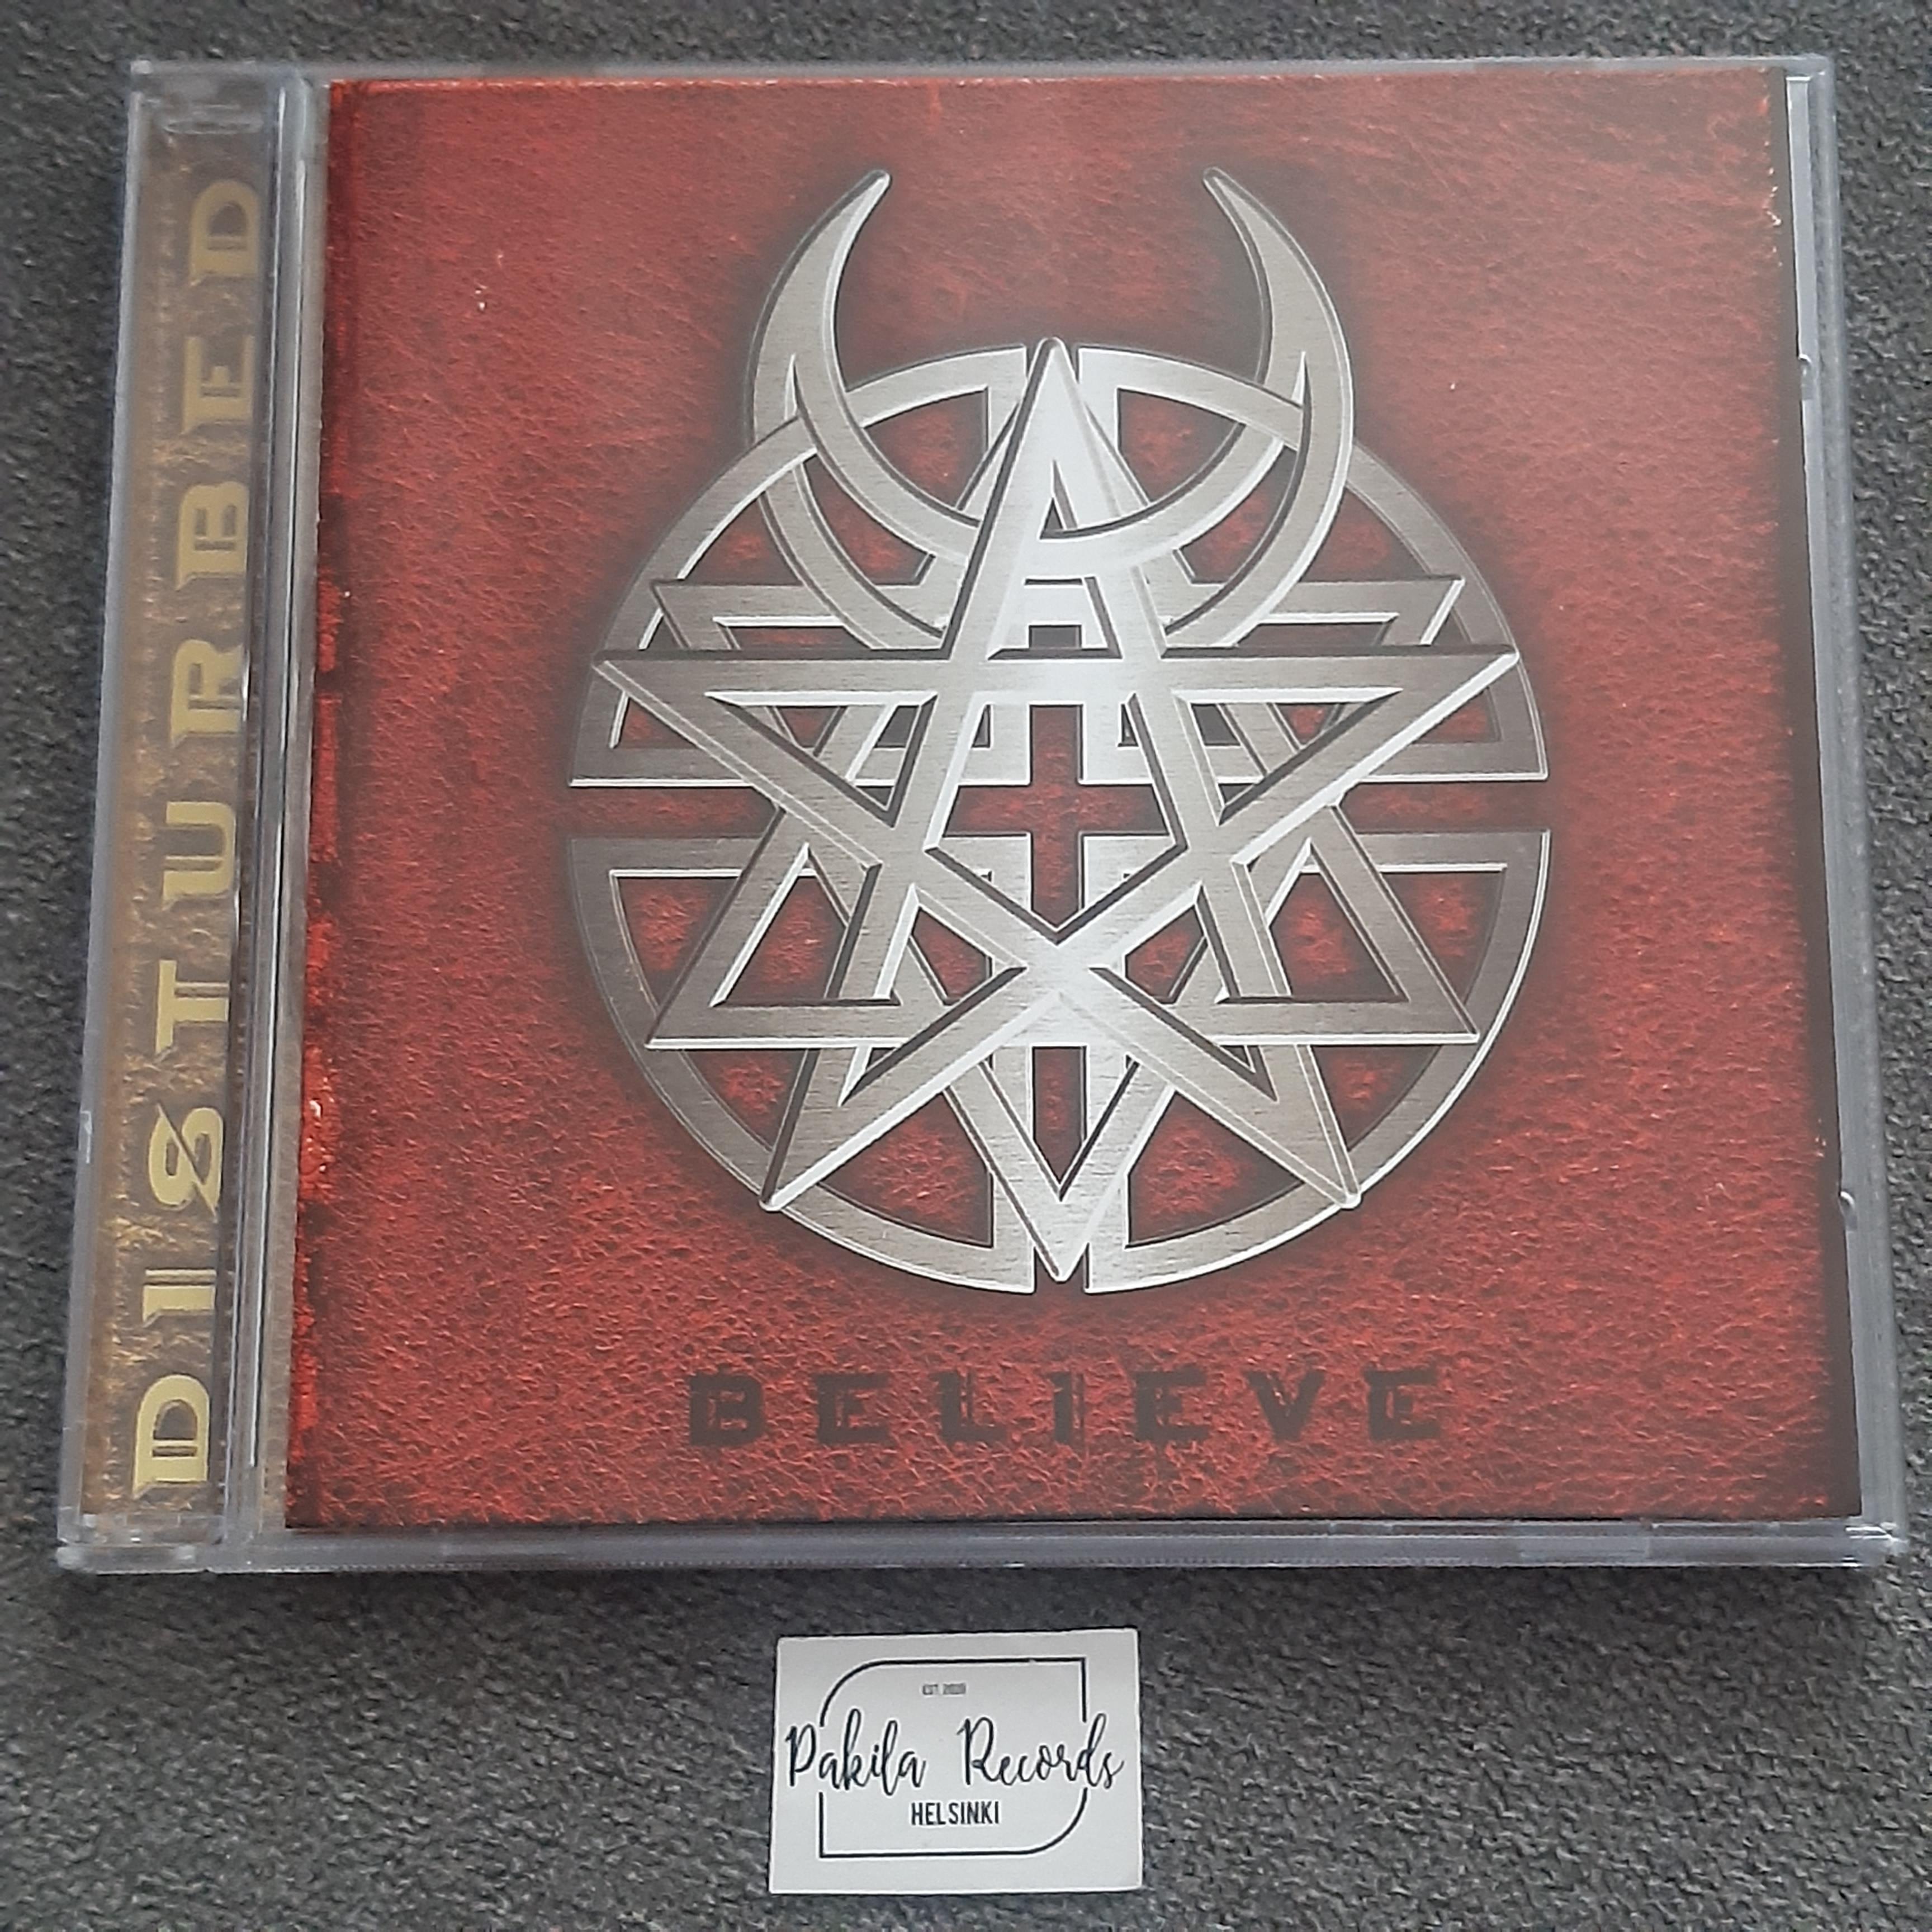 Disturbed - Believe - CD (käytetty)